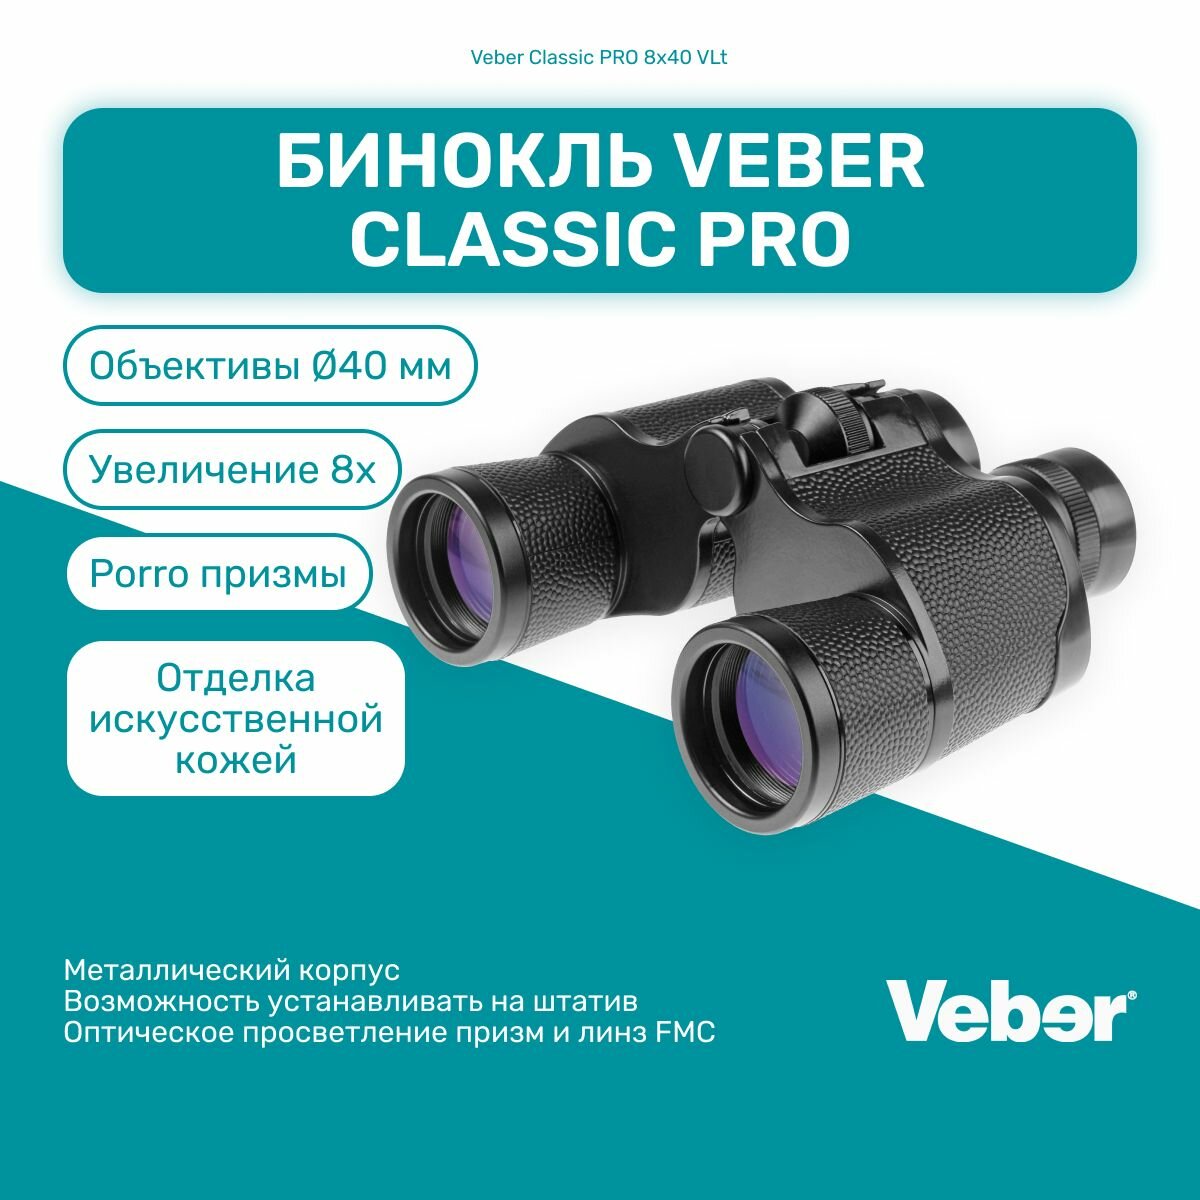 Бинокль Veber Classic PRO 8x40 VL, мощный профессиональный для охоты и рыбалки, универсальный